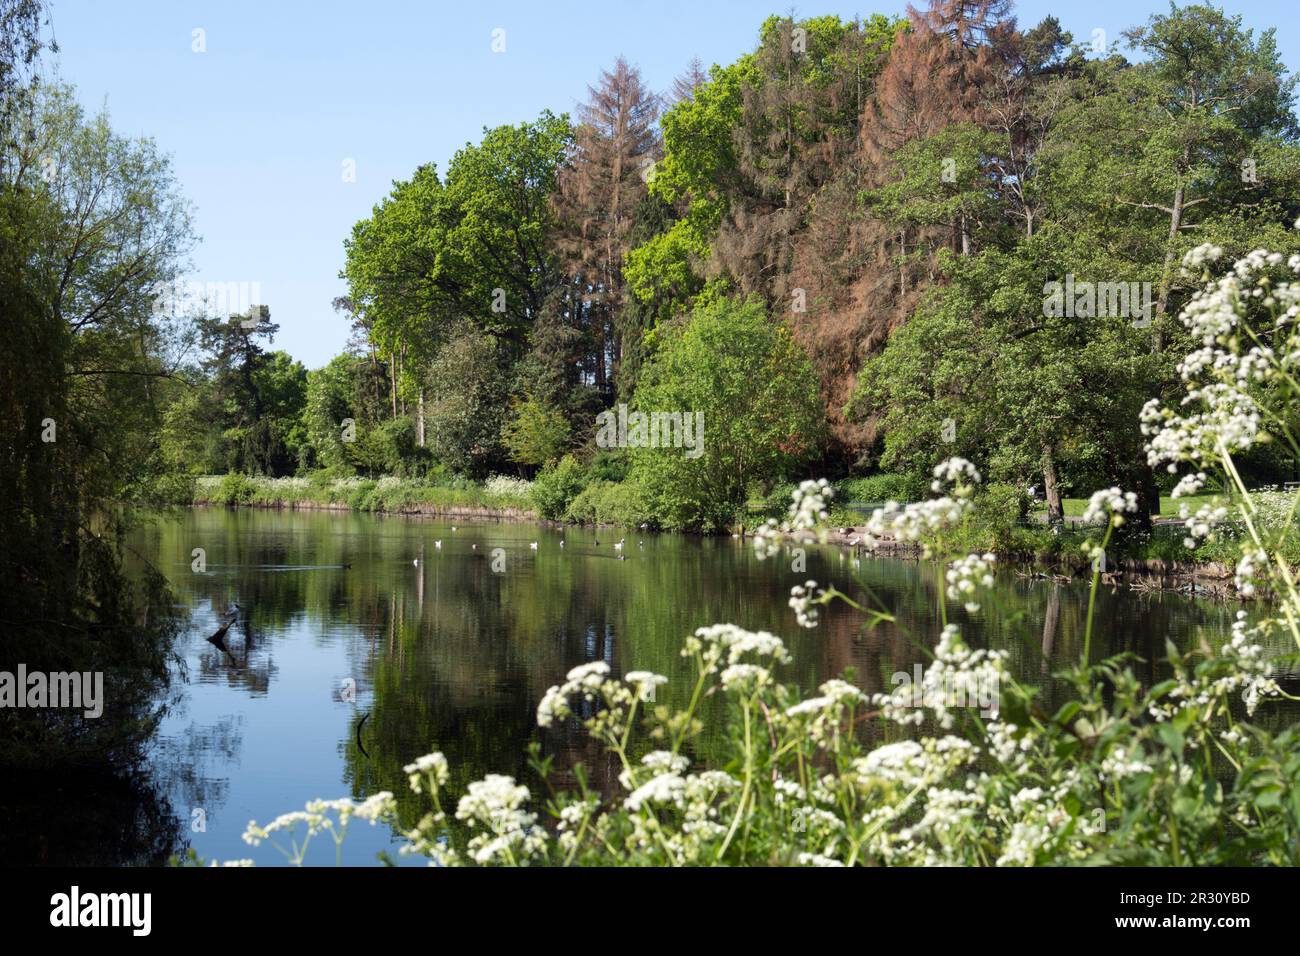 The Lake, Brueton Park, Solihull, West Midlands, England, UK Stock Photo